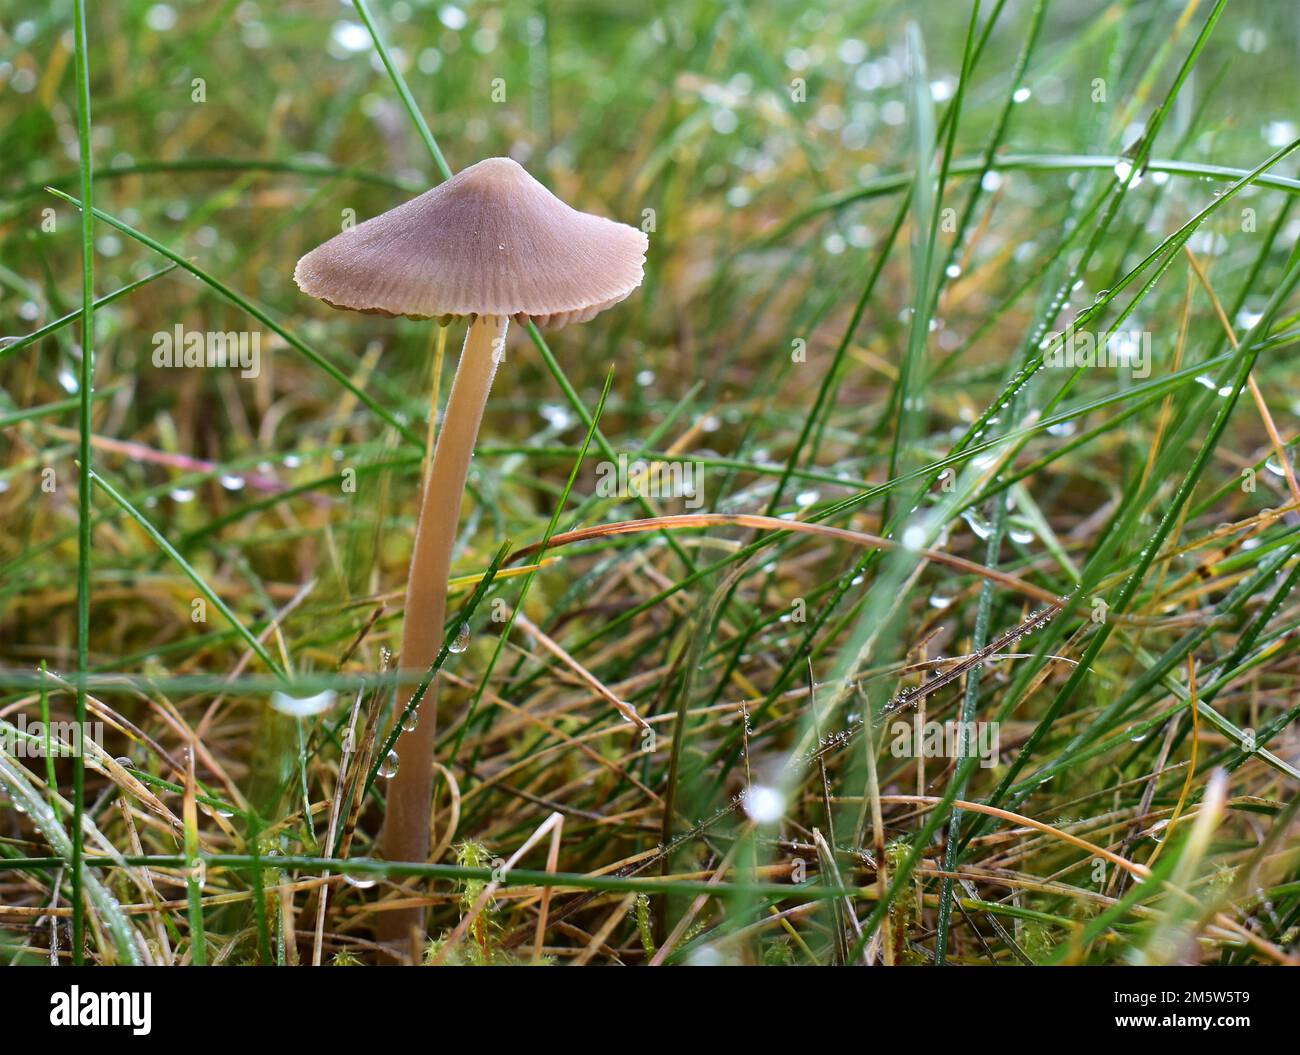 Piccolo fungo che cresce in erba vicino a una foresta, micena olivaceous o caschetto fungo, vista ravvicinata su uno sfondo verde Foto Stock